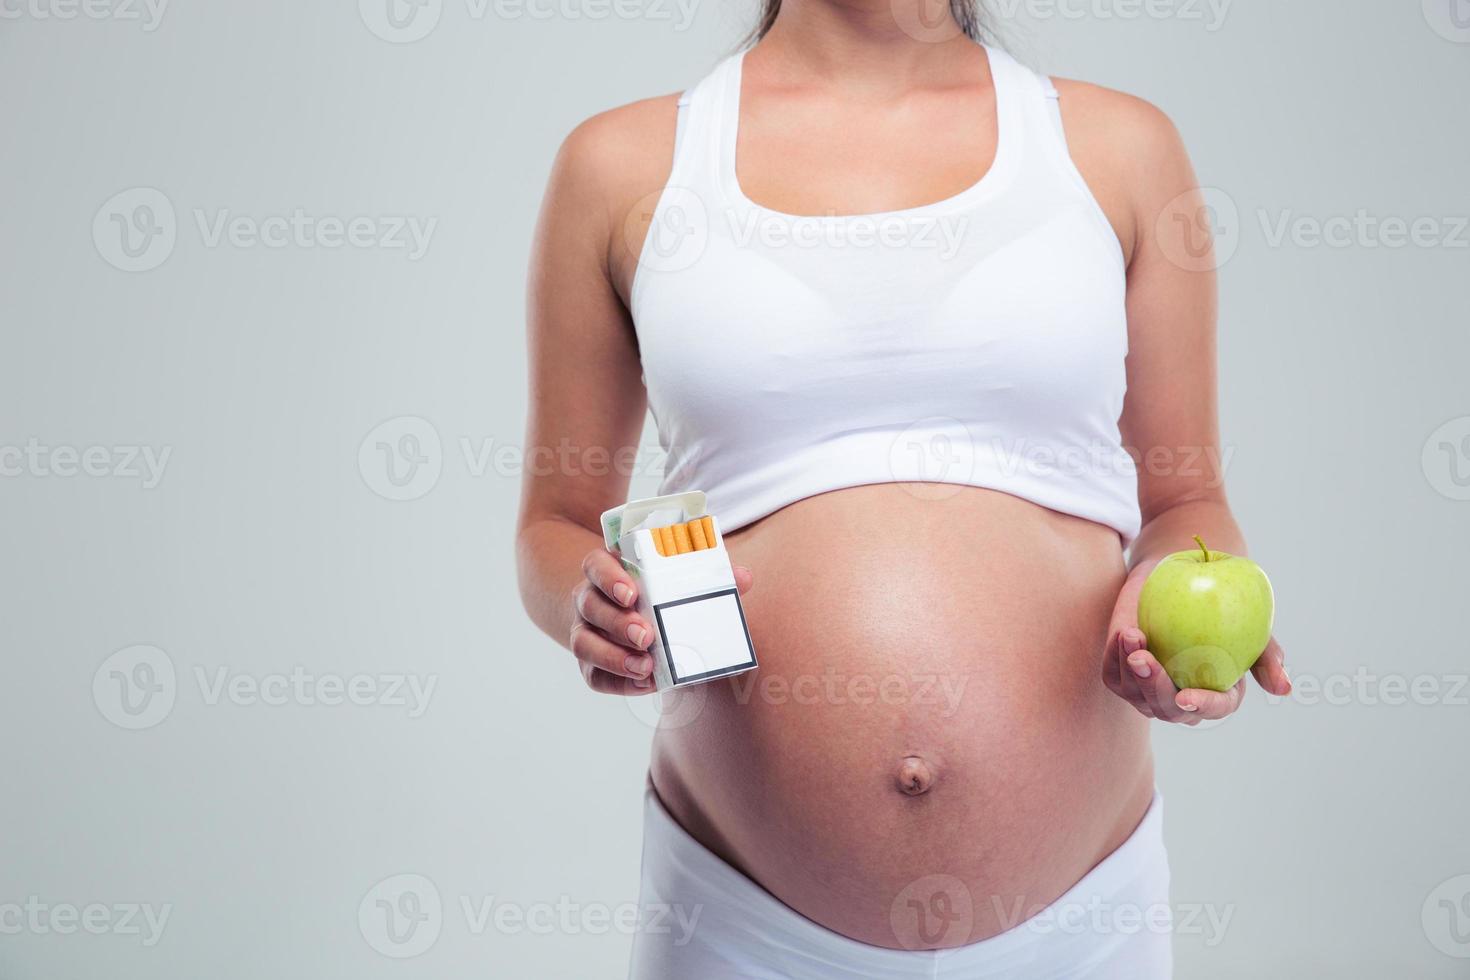 mujer embarazada elegir cigarrillos beetwin y manzana foto